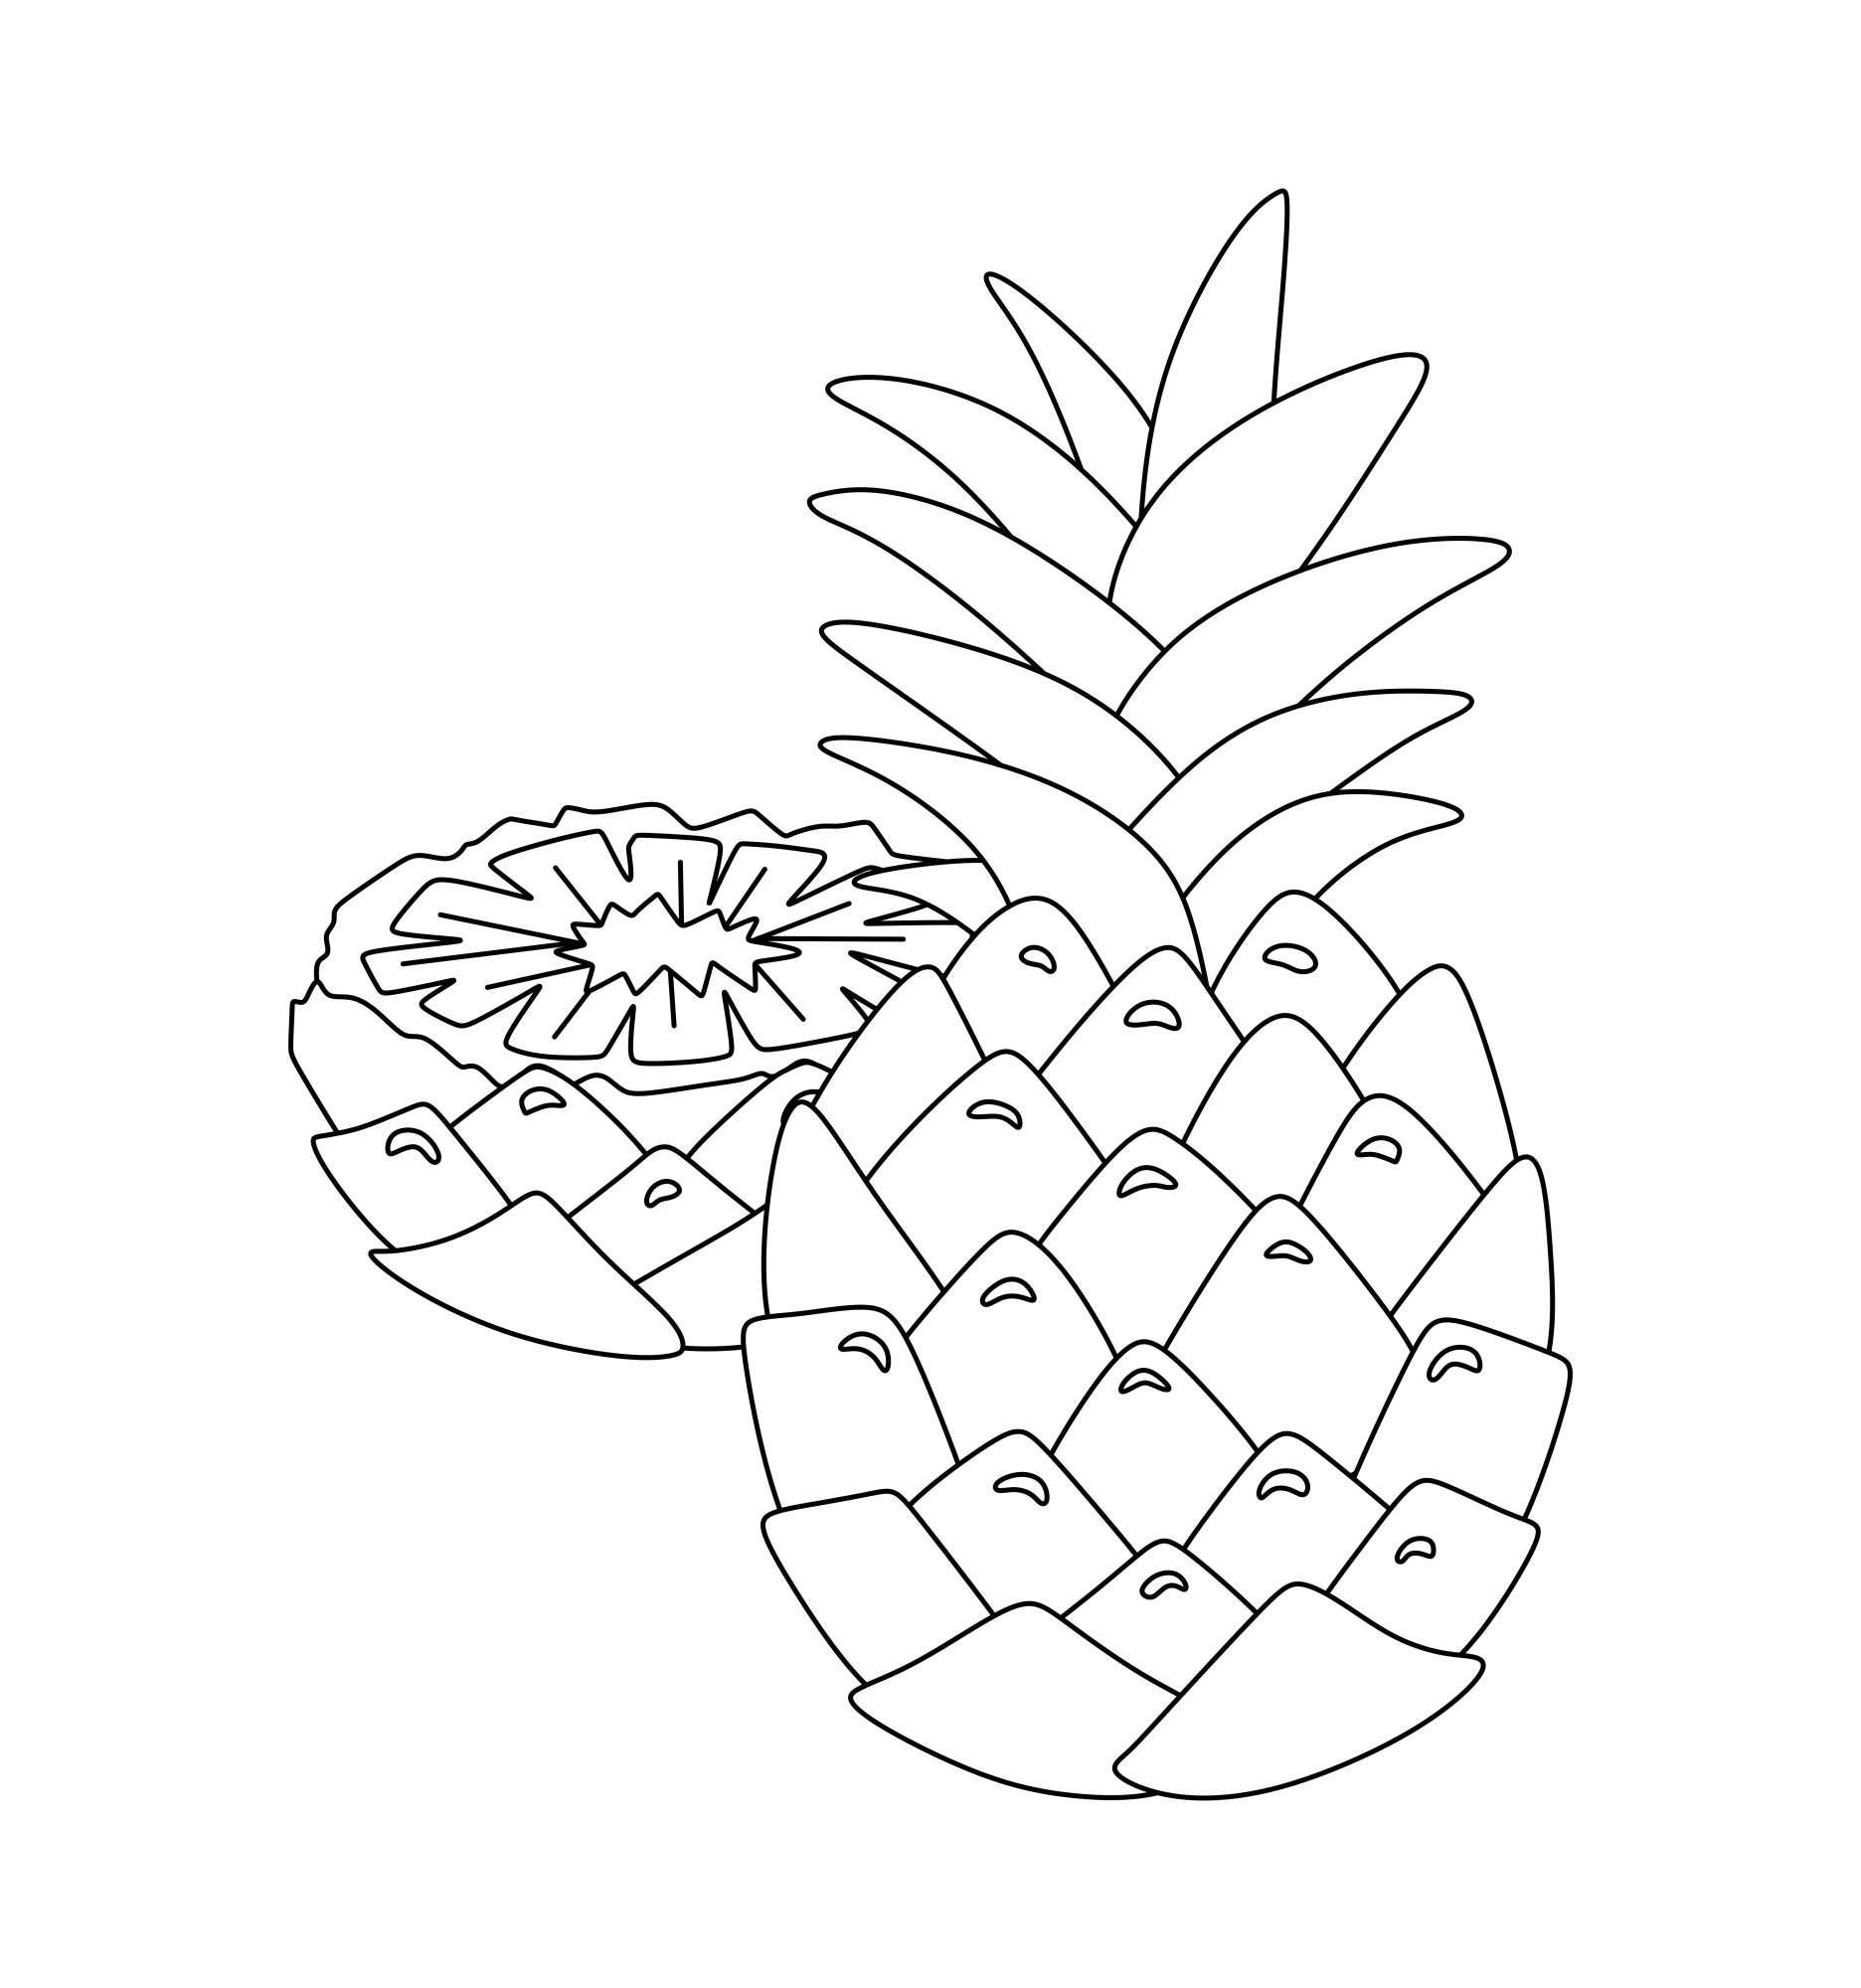 Раскраска для детей: ананас с половинкой